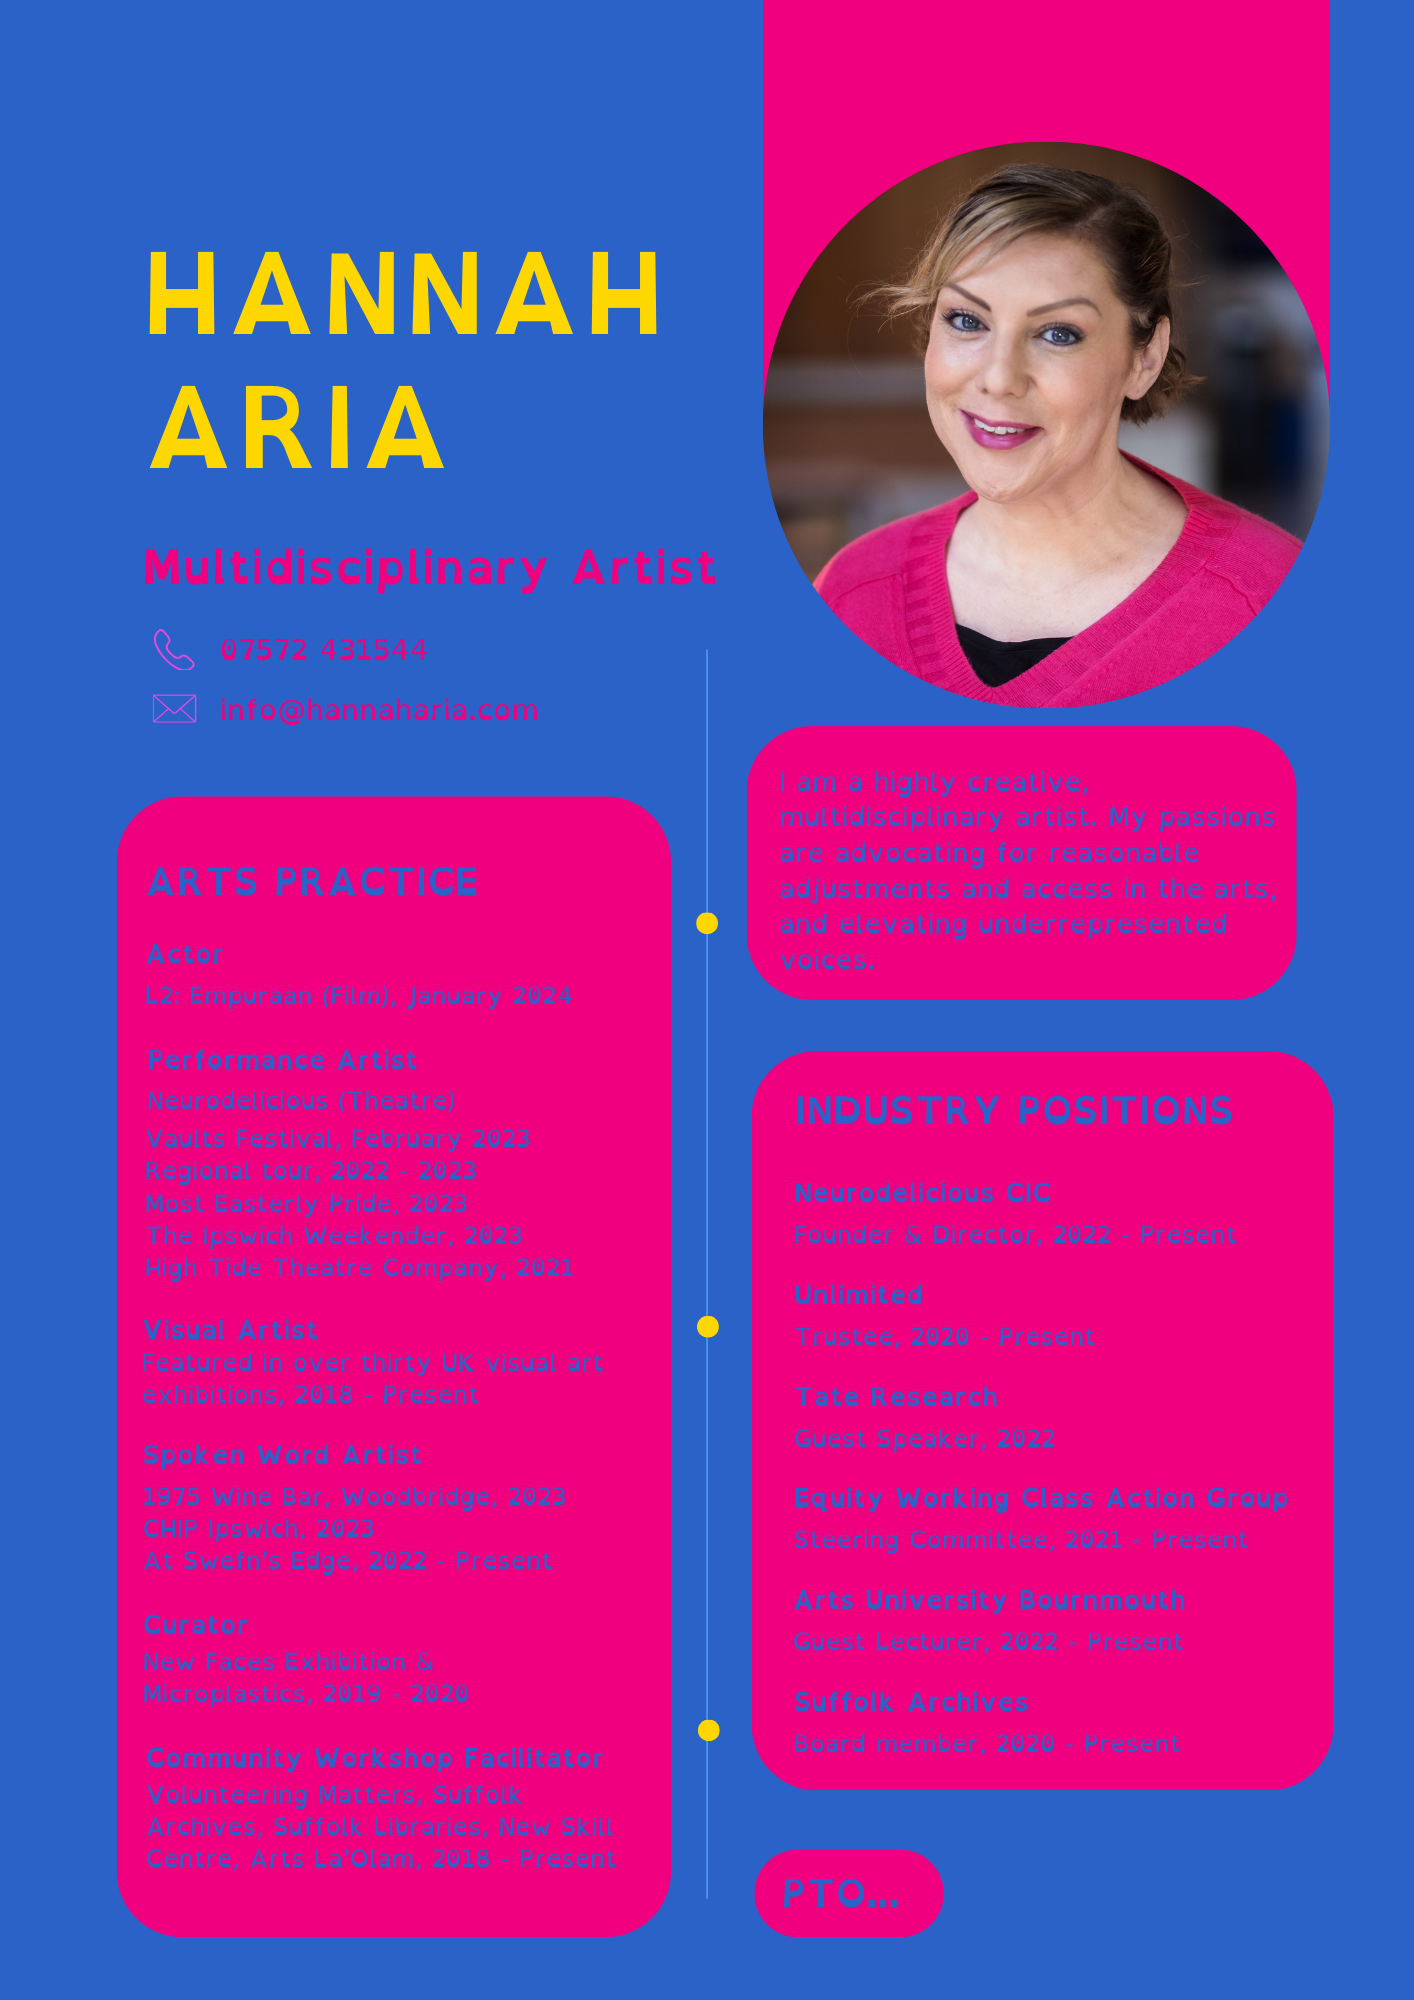 Hannah Aria CV - Page 1.png